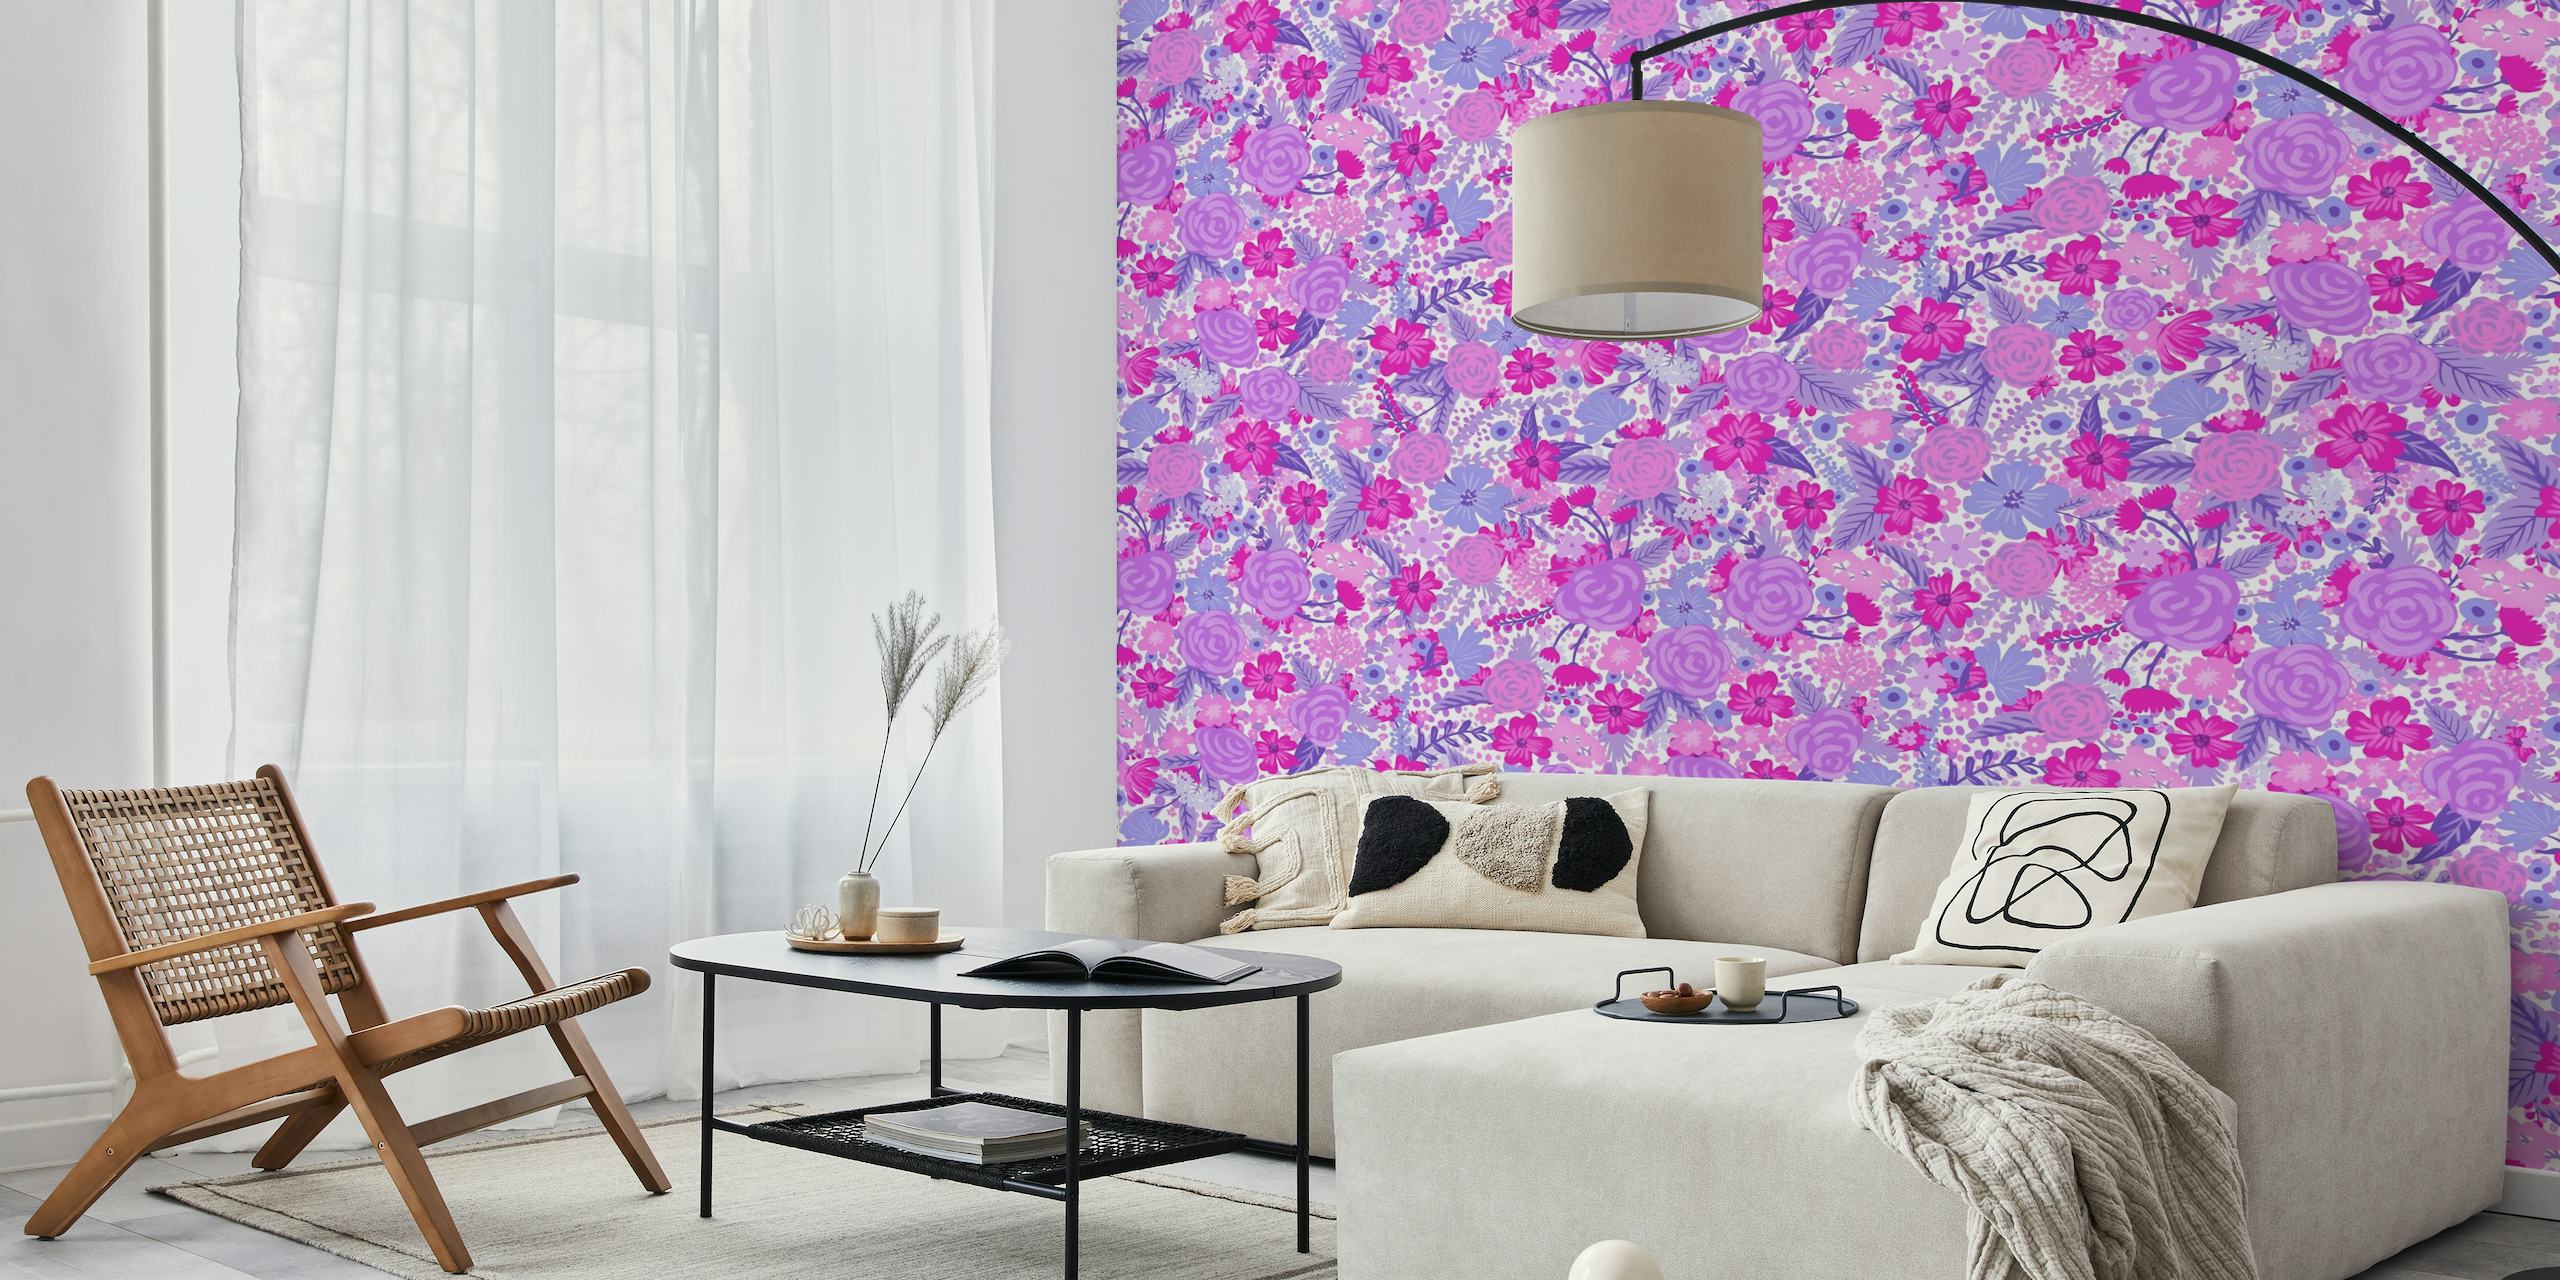 Um vibrante e intrincado mural de parede Intangible Flower Pattern 3 com desenhos florais roxos e rosa.